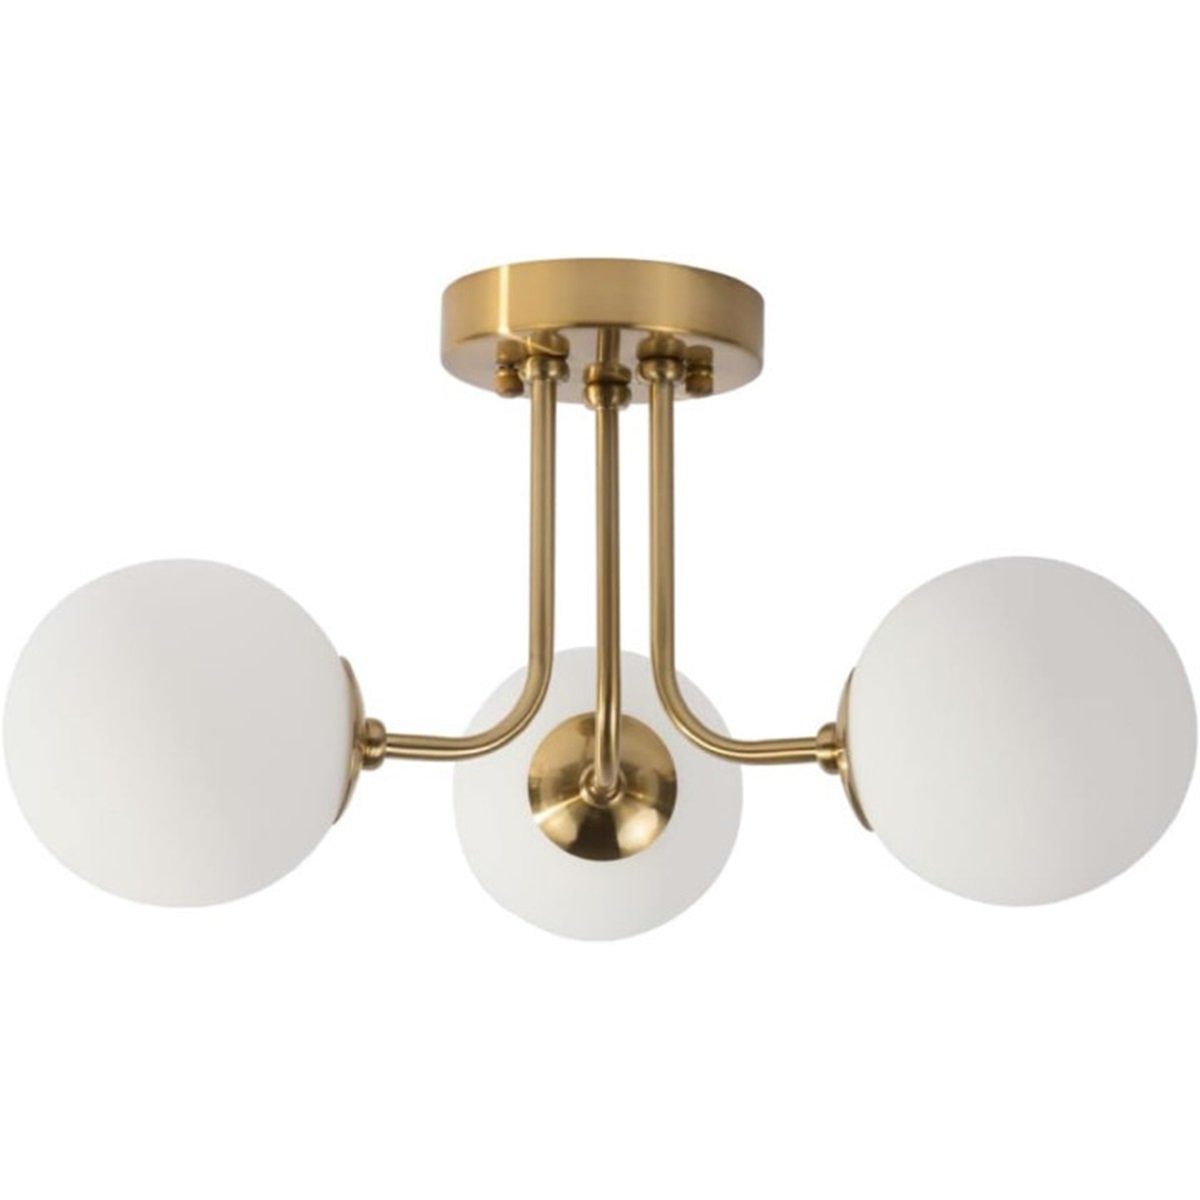 DOPWii Kugelförmig 10-15 3-Kopf-Deckenlampe m² Raum,E27-Lampenfassung Deckenleuchte Gold für